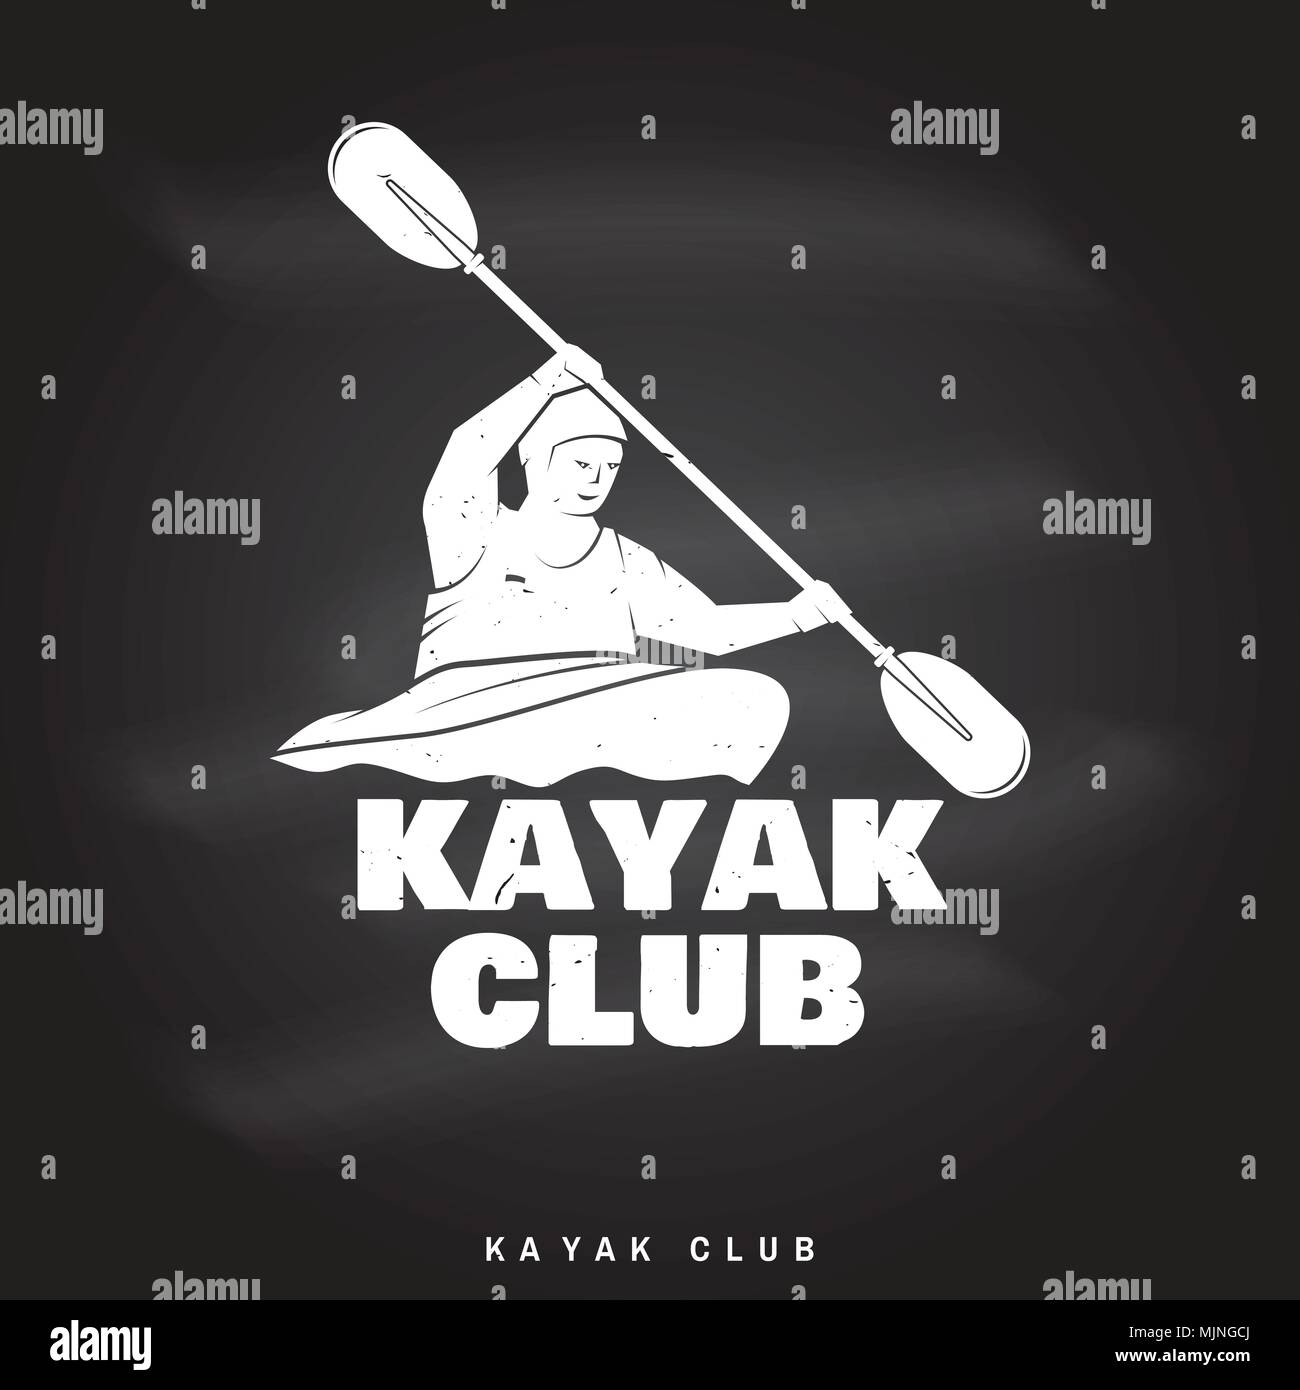 Kayak club. Illustrazione Vettoriale sulla lavagna. Concetto di t-shirt, stampare il timbro o il raccordo a t. Vintage design tipografia con silhouette di kayaker. Extreme Illustrazione Vettoriale